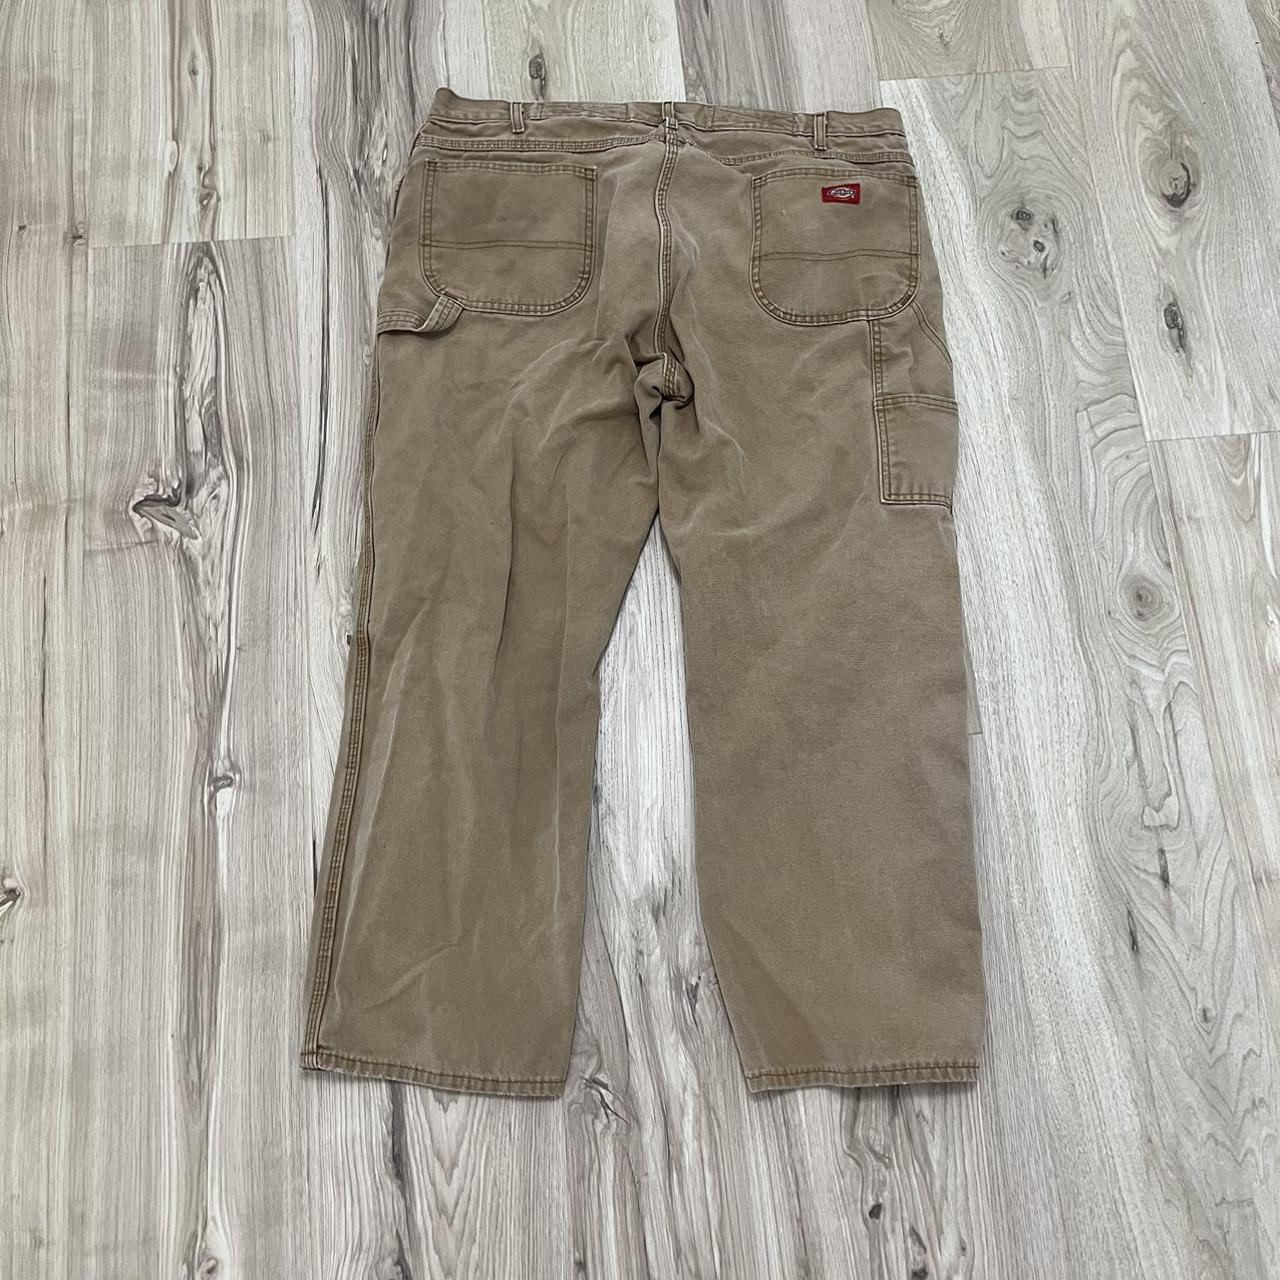 Men's Tan Dickies Carpenter Pants Size 40x30 - Depop